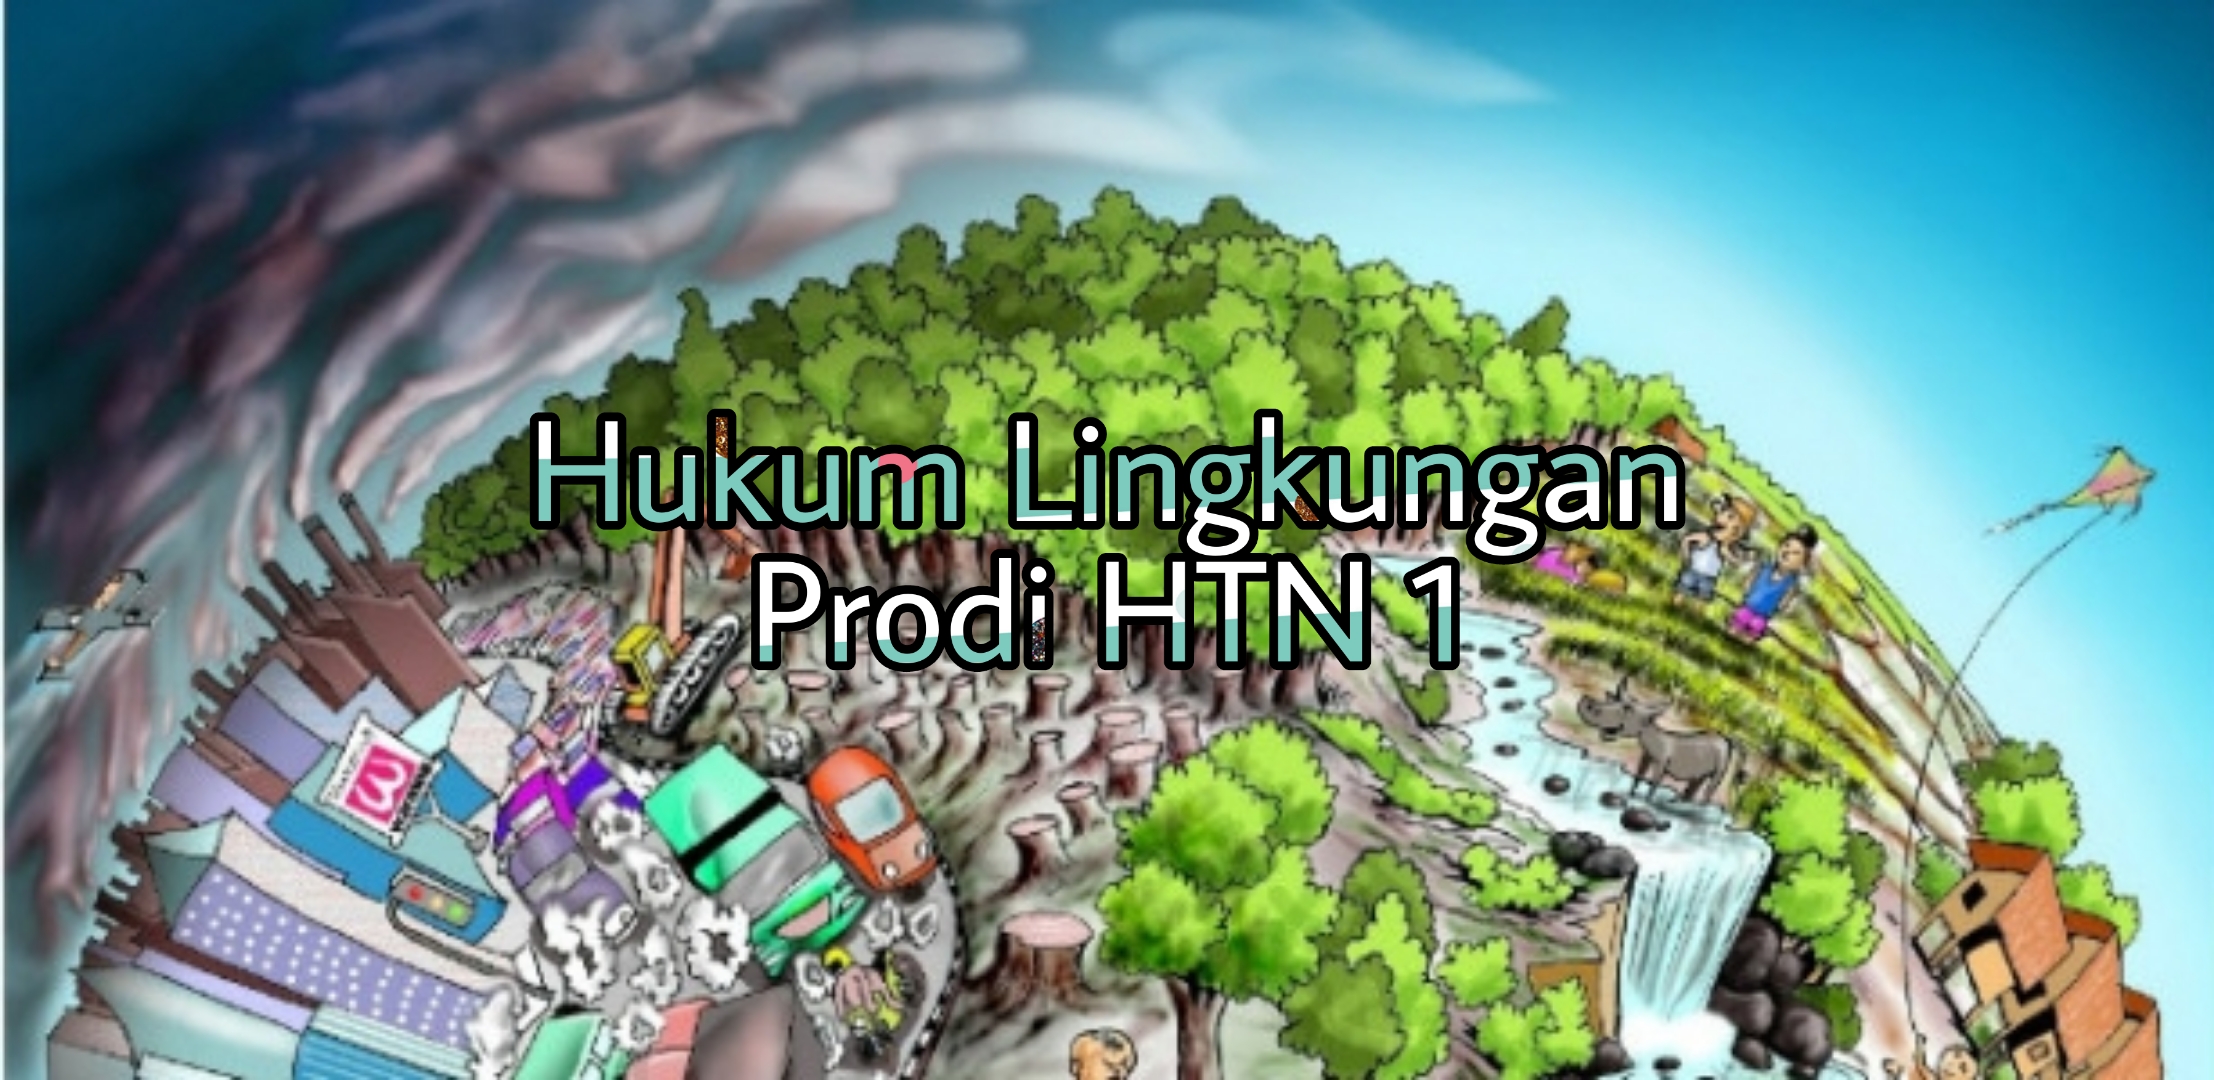 HUKUM LINGKUNGAN - HTN1 - 2018